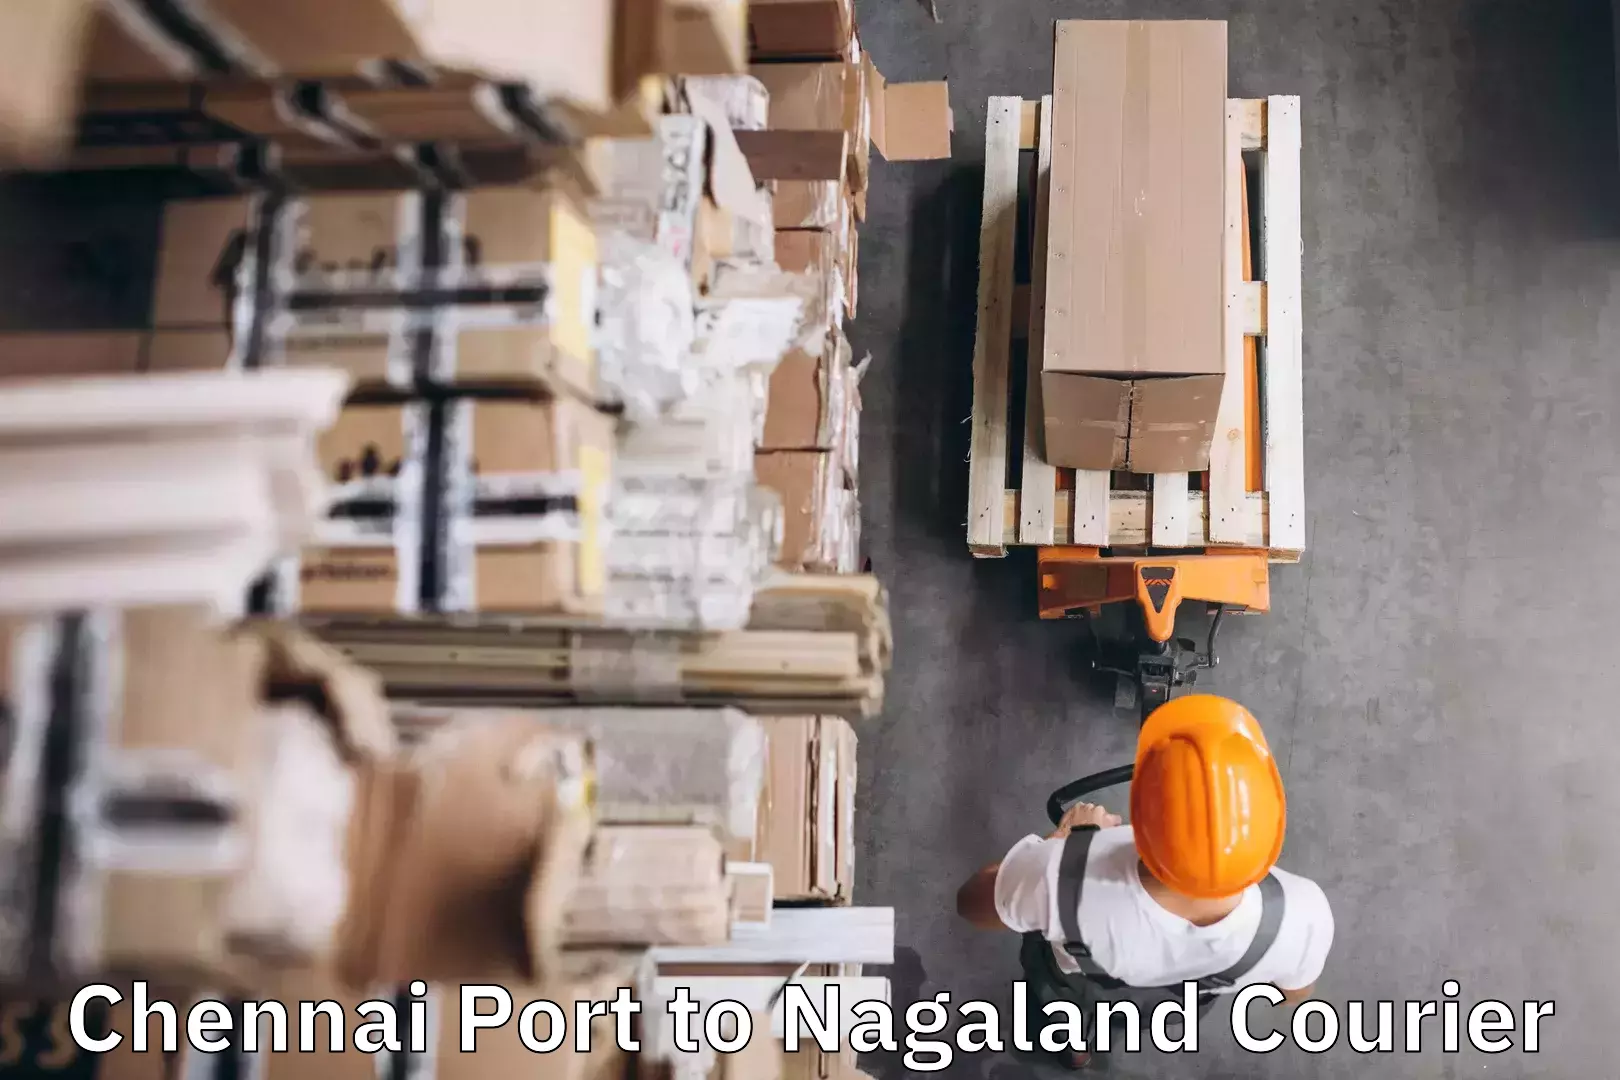 Baggage shipping service Chennai Port to Nagaland